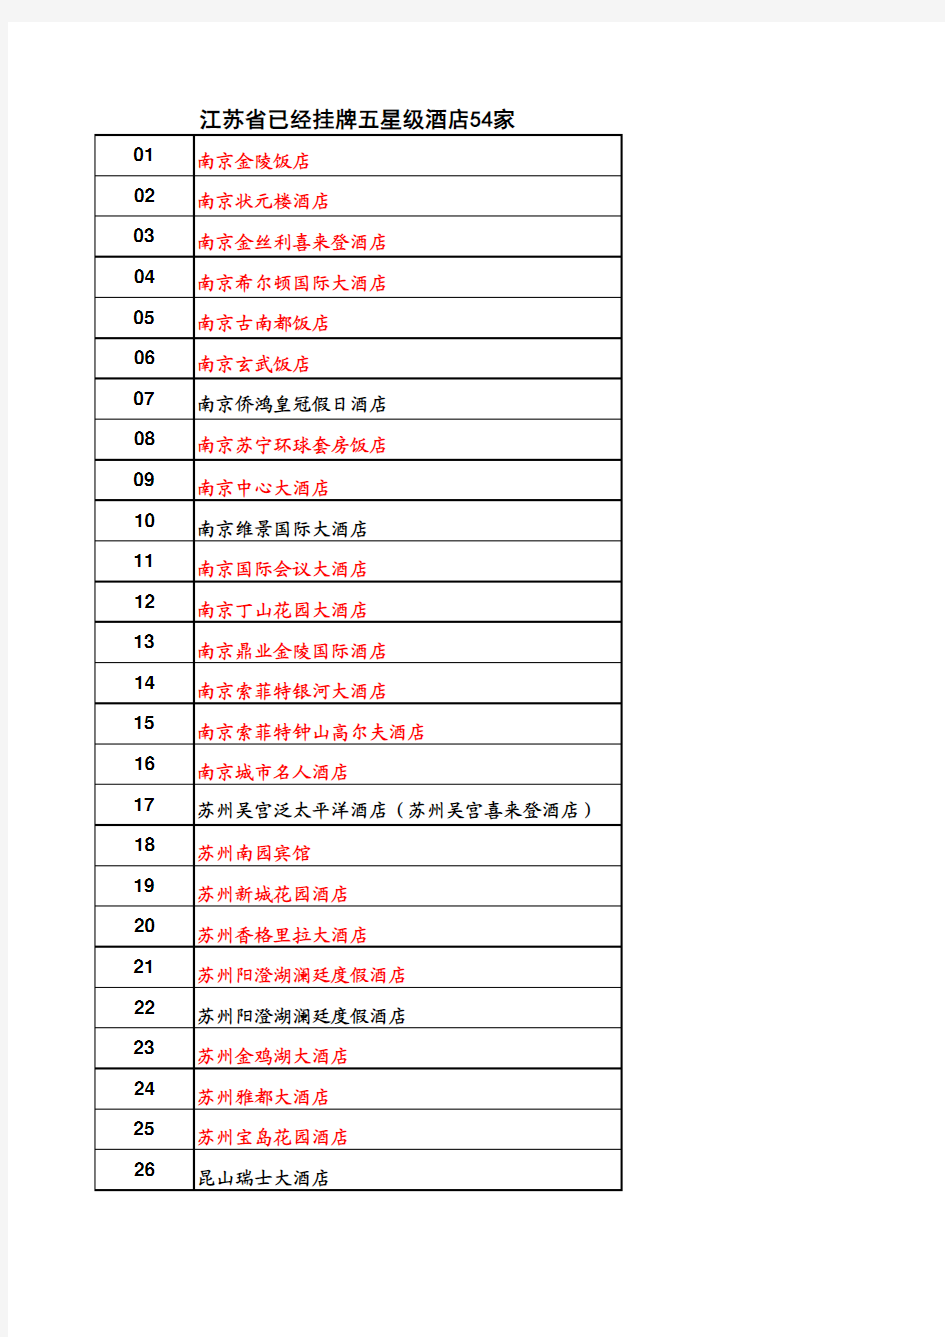 江苏省已经挂牌五星级酒店统计名单